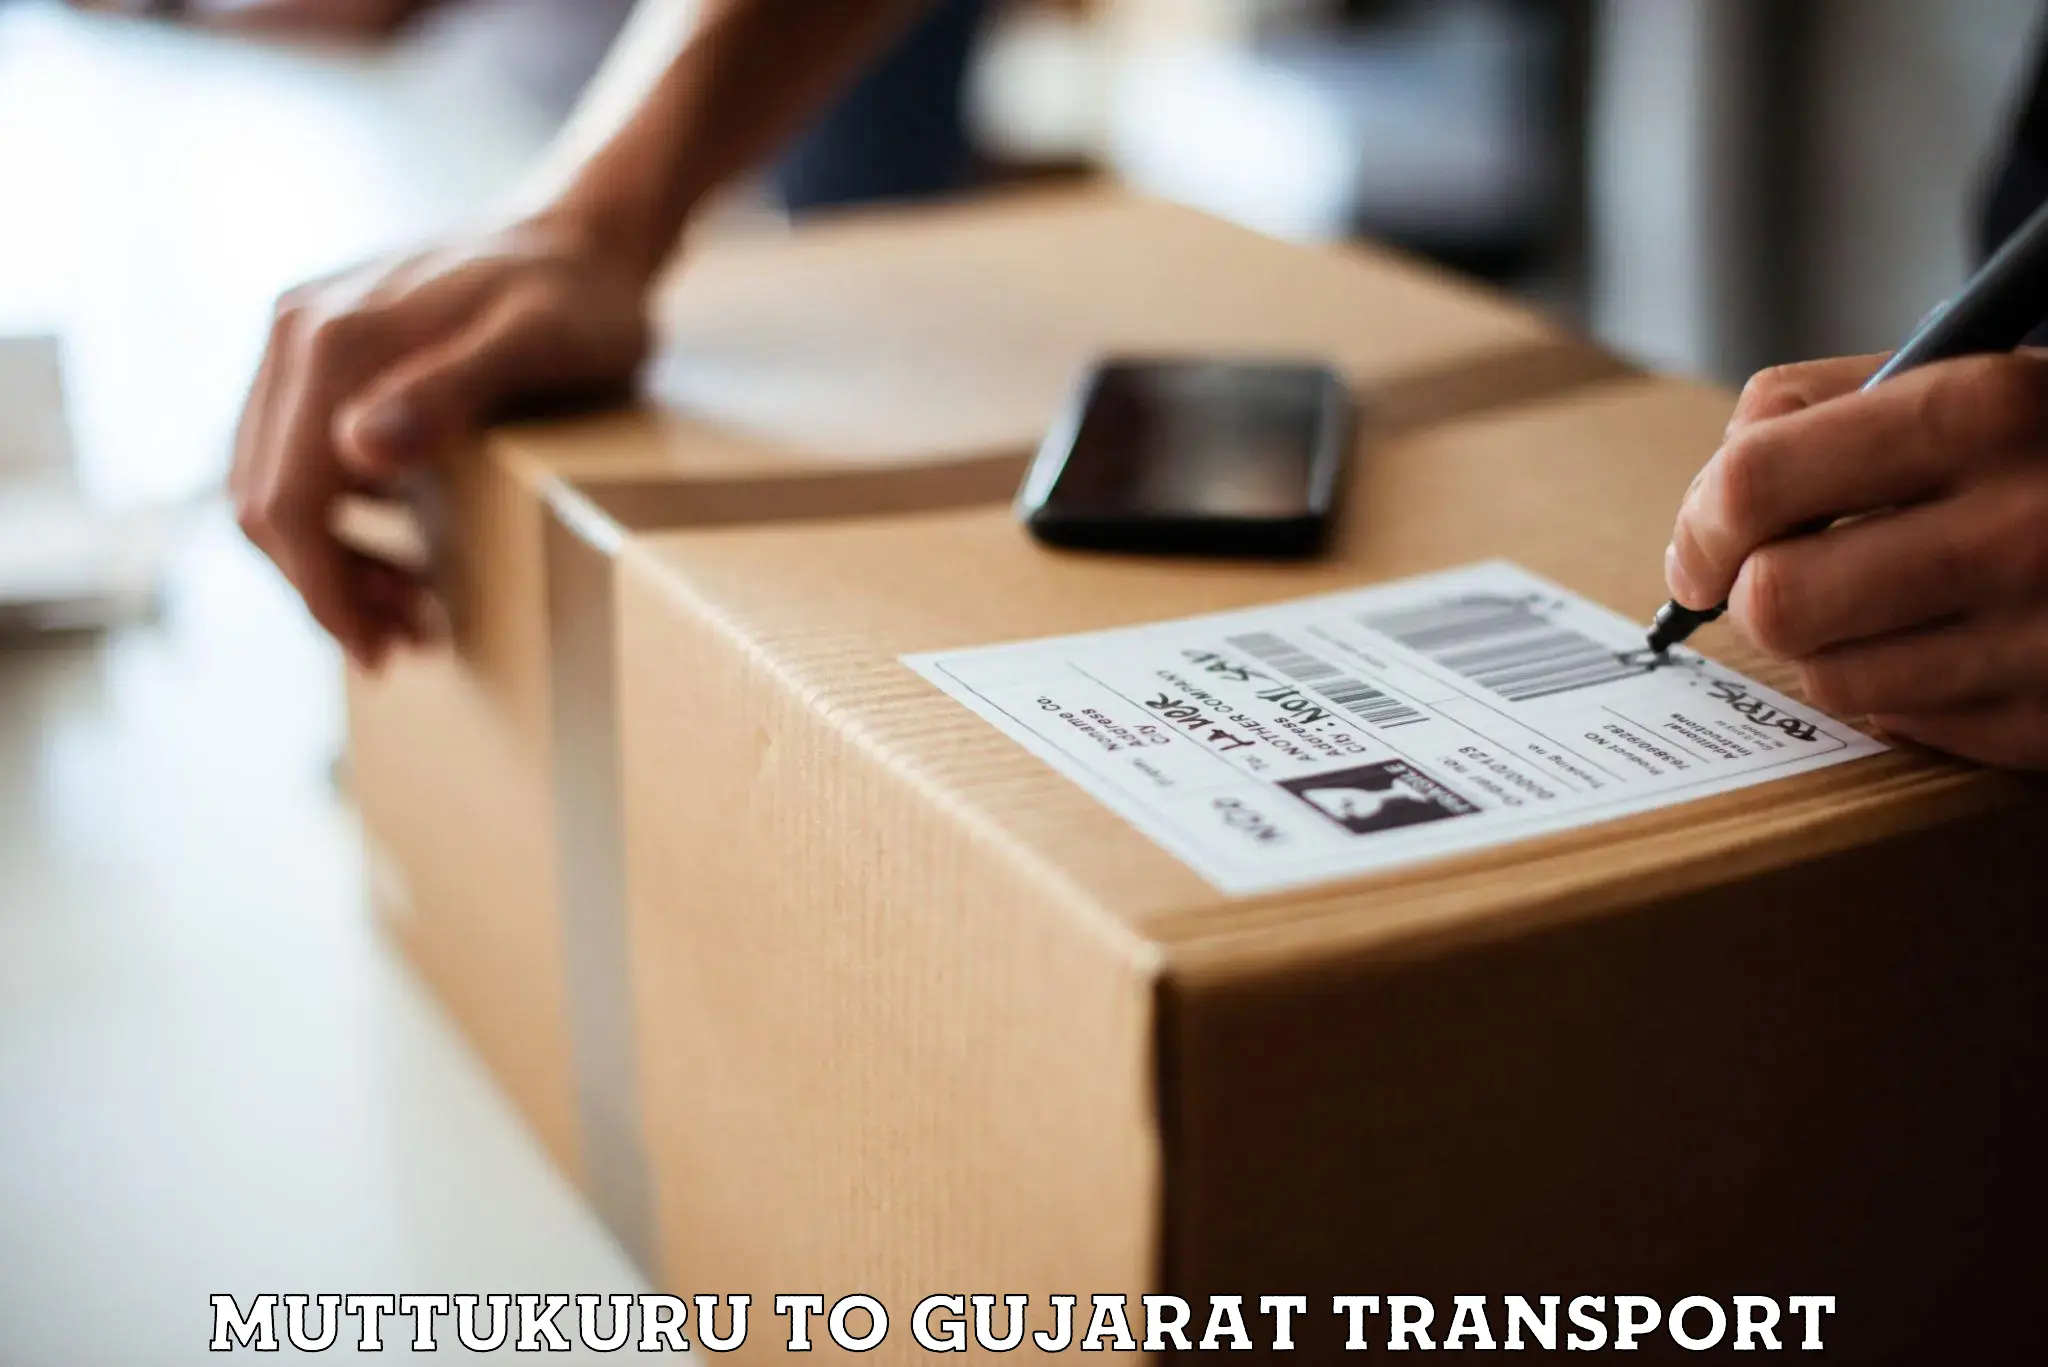 Furniture transport service Muttukuru to Narmada Gujarat